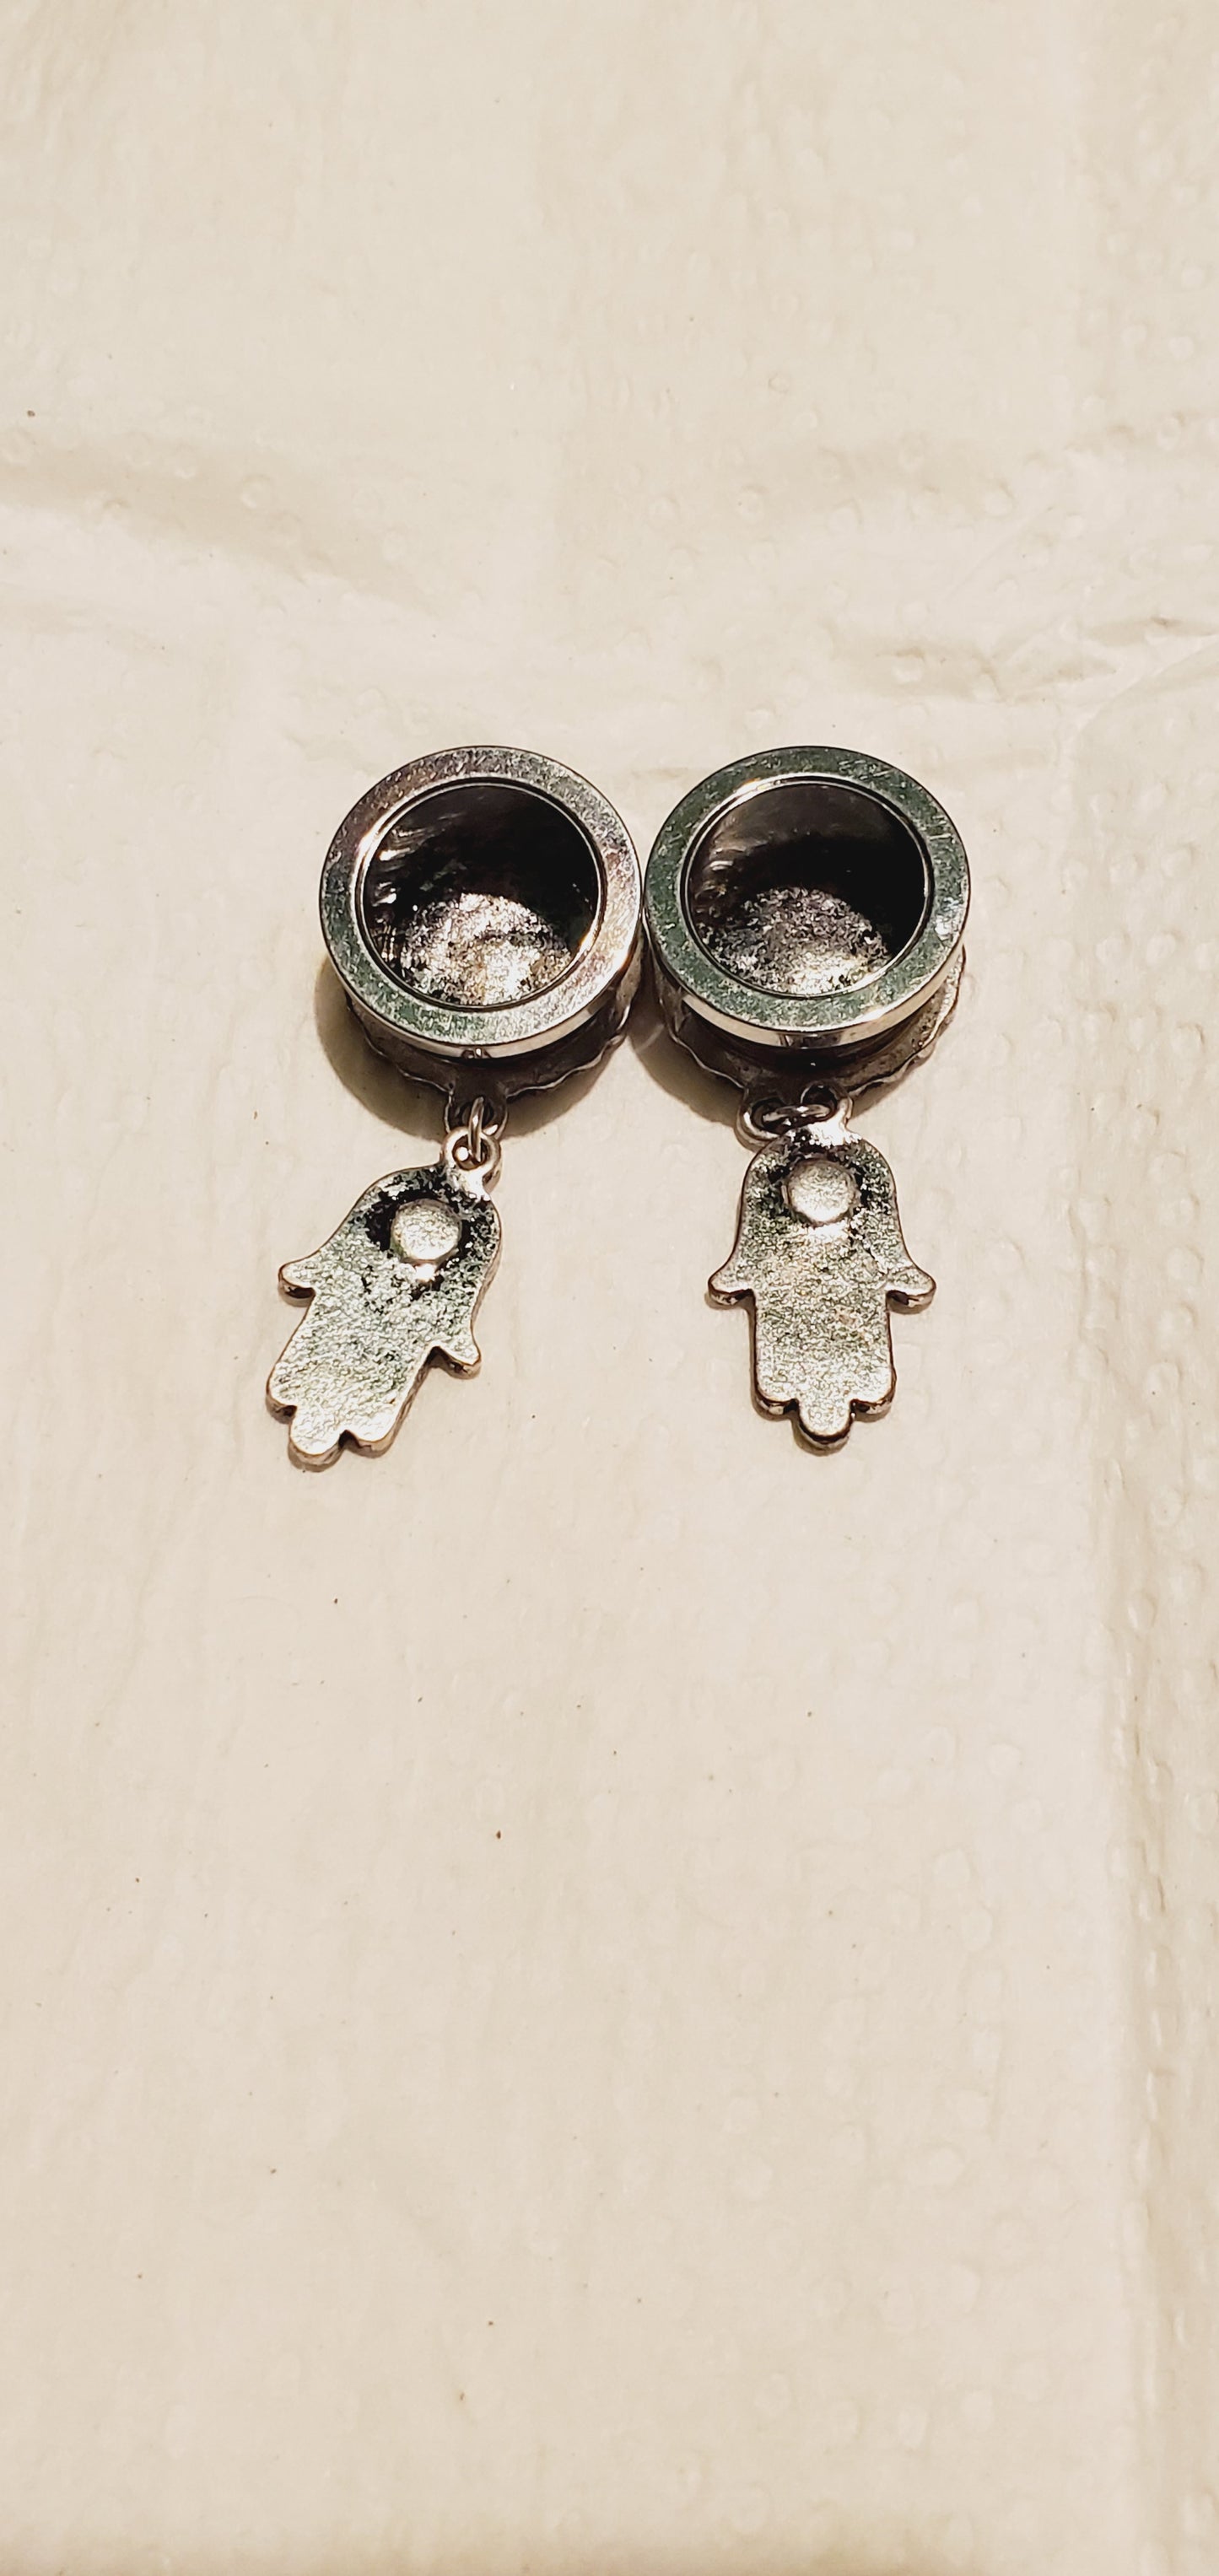 Guage earrings